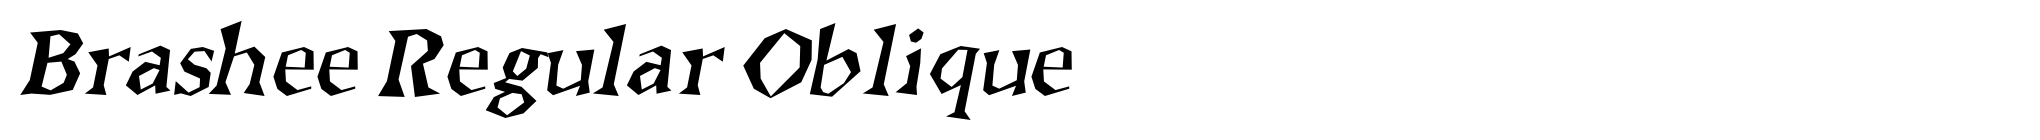 Brashee Regular Oblique image